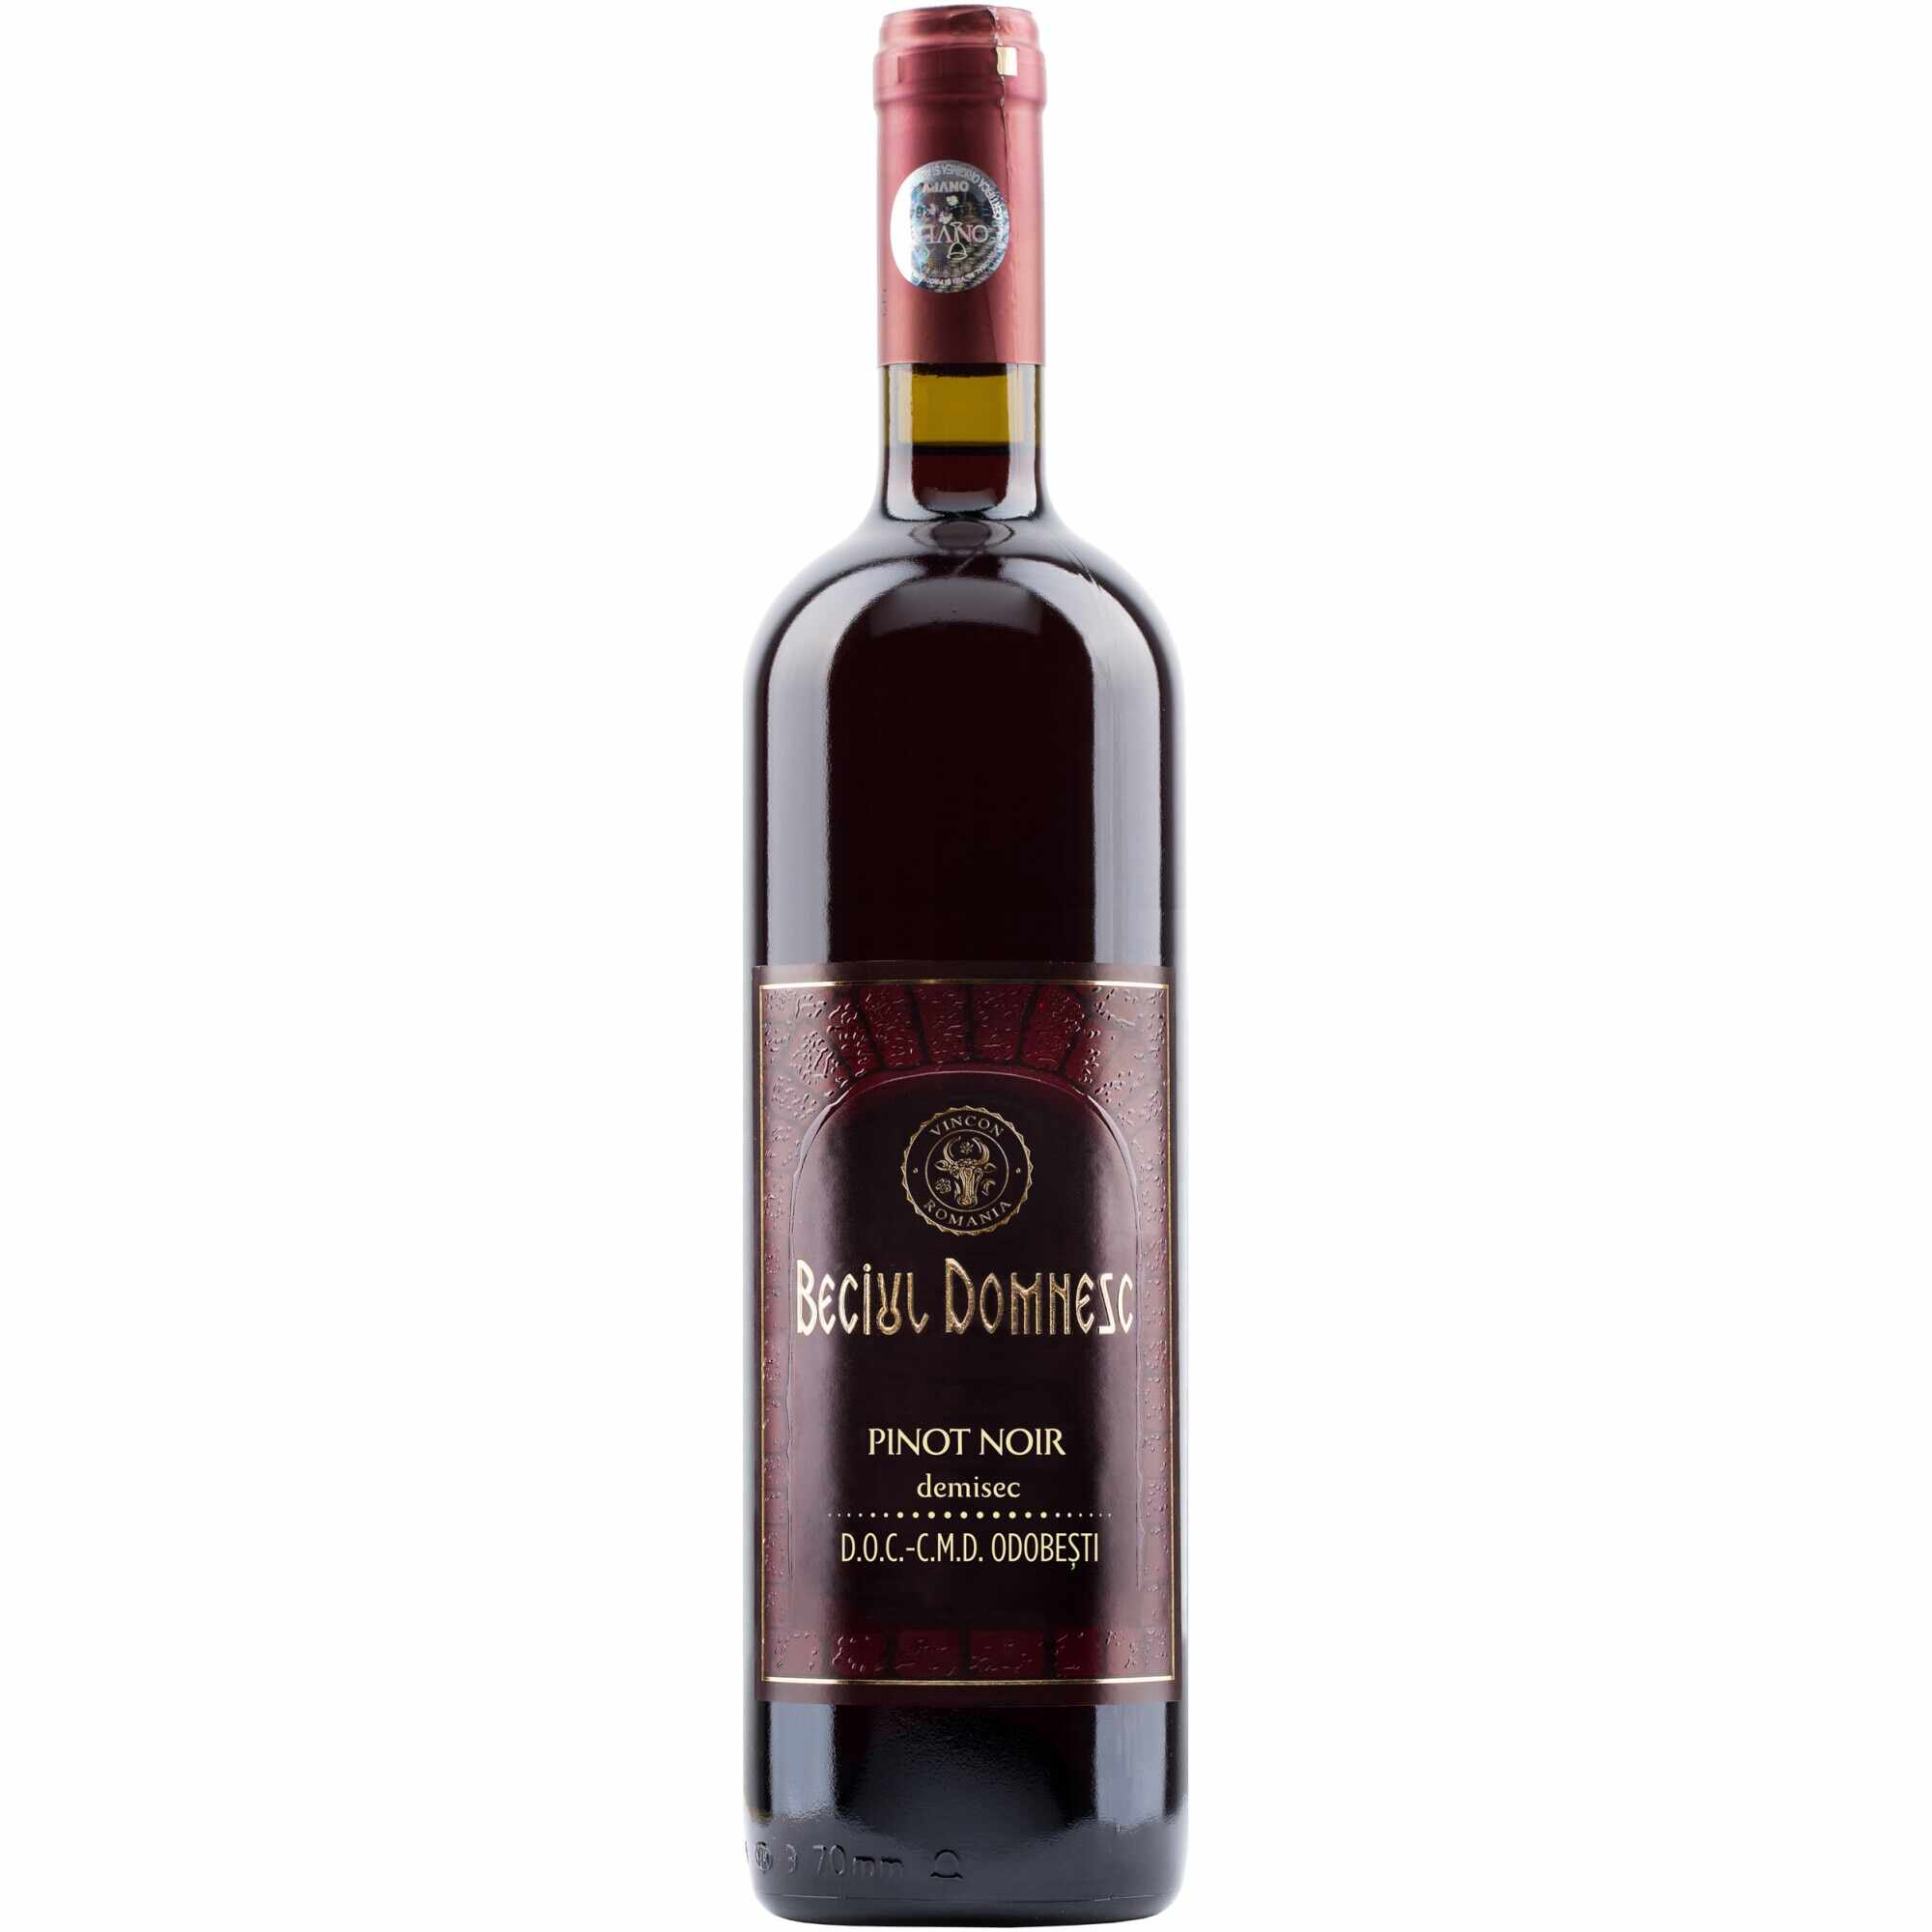 Vin Rosu Beciul Domnesc, Pinot Noir, Demisec, 0.75l